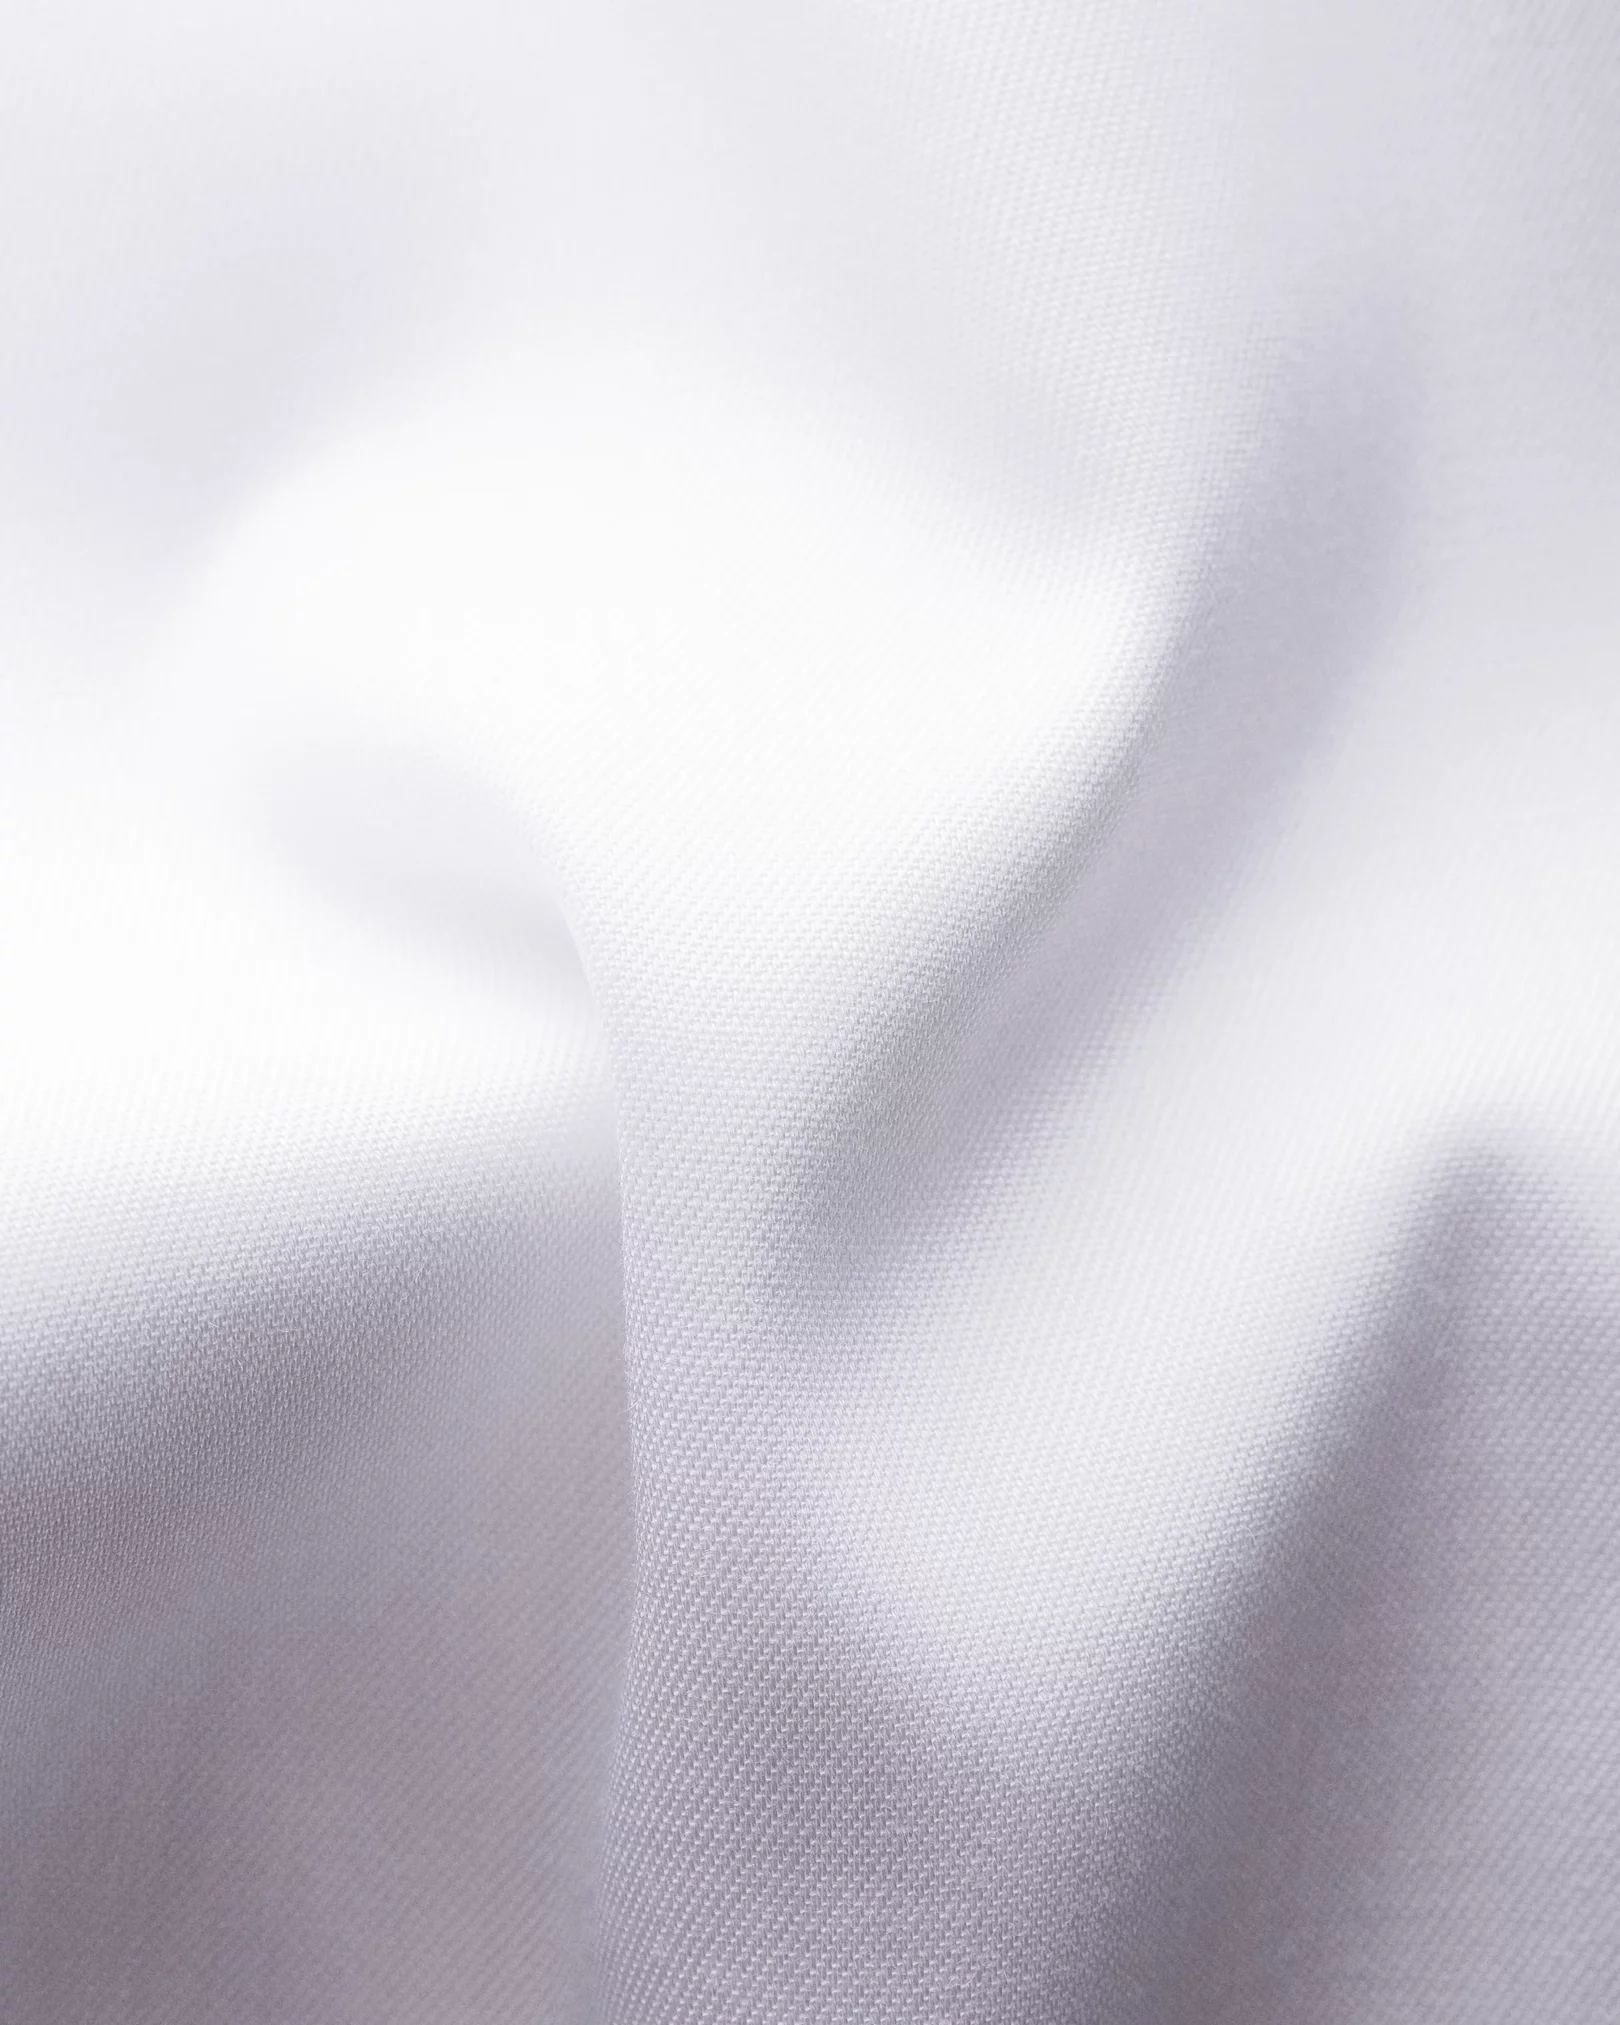 Eton - white button under collar shirt